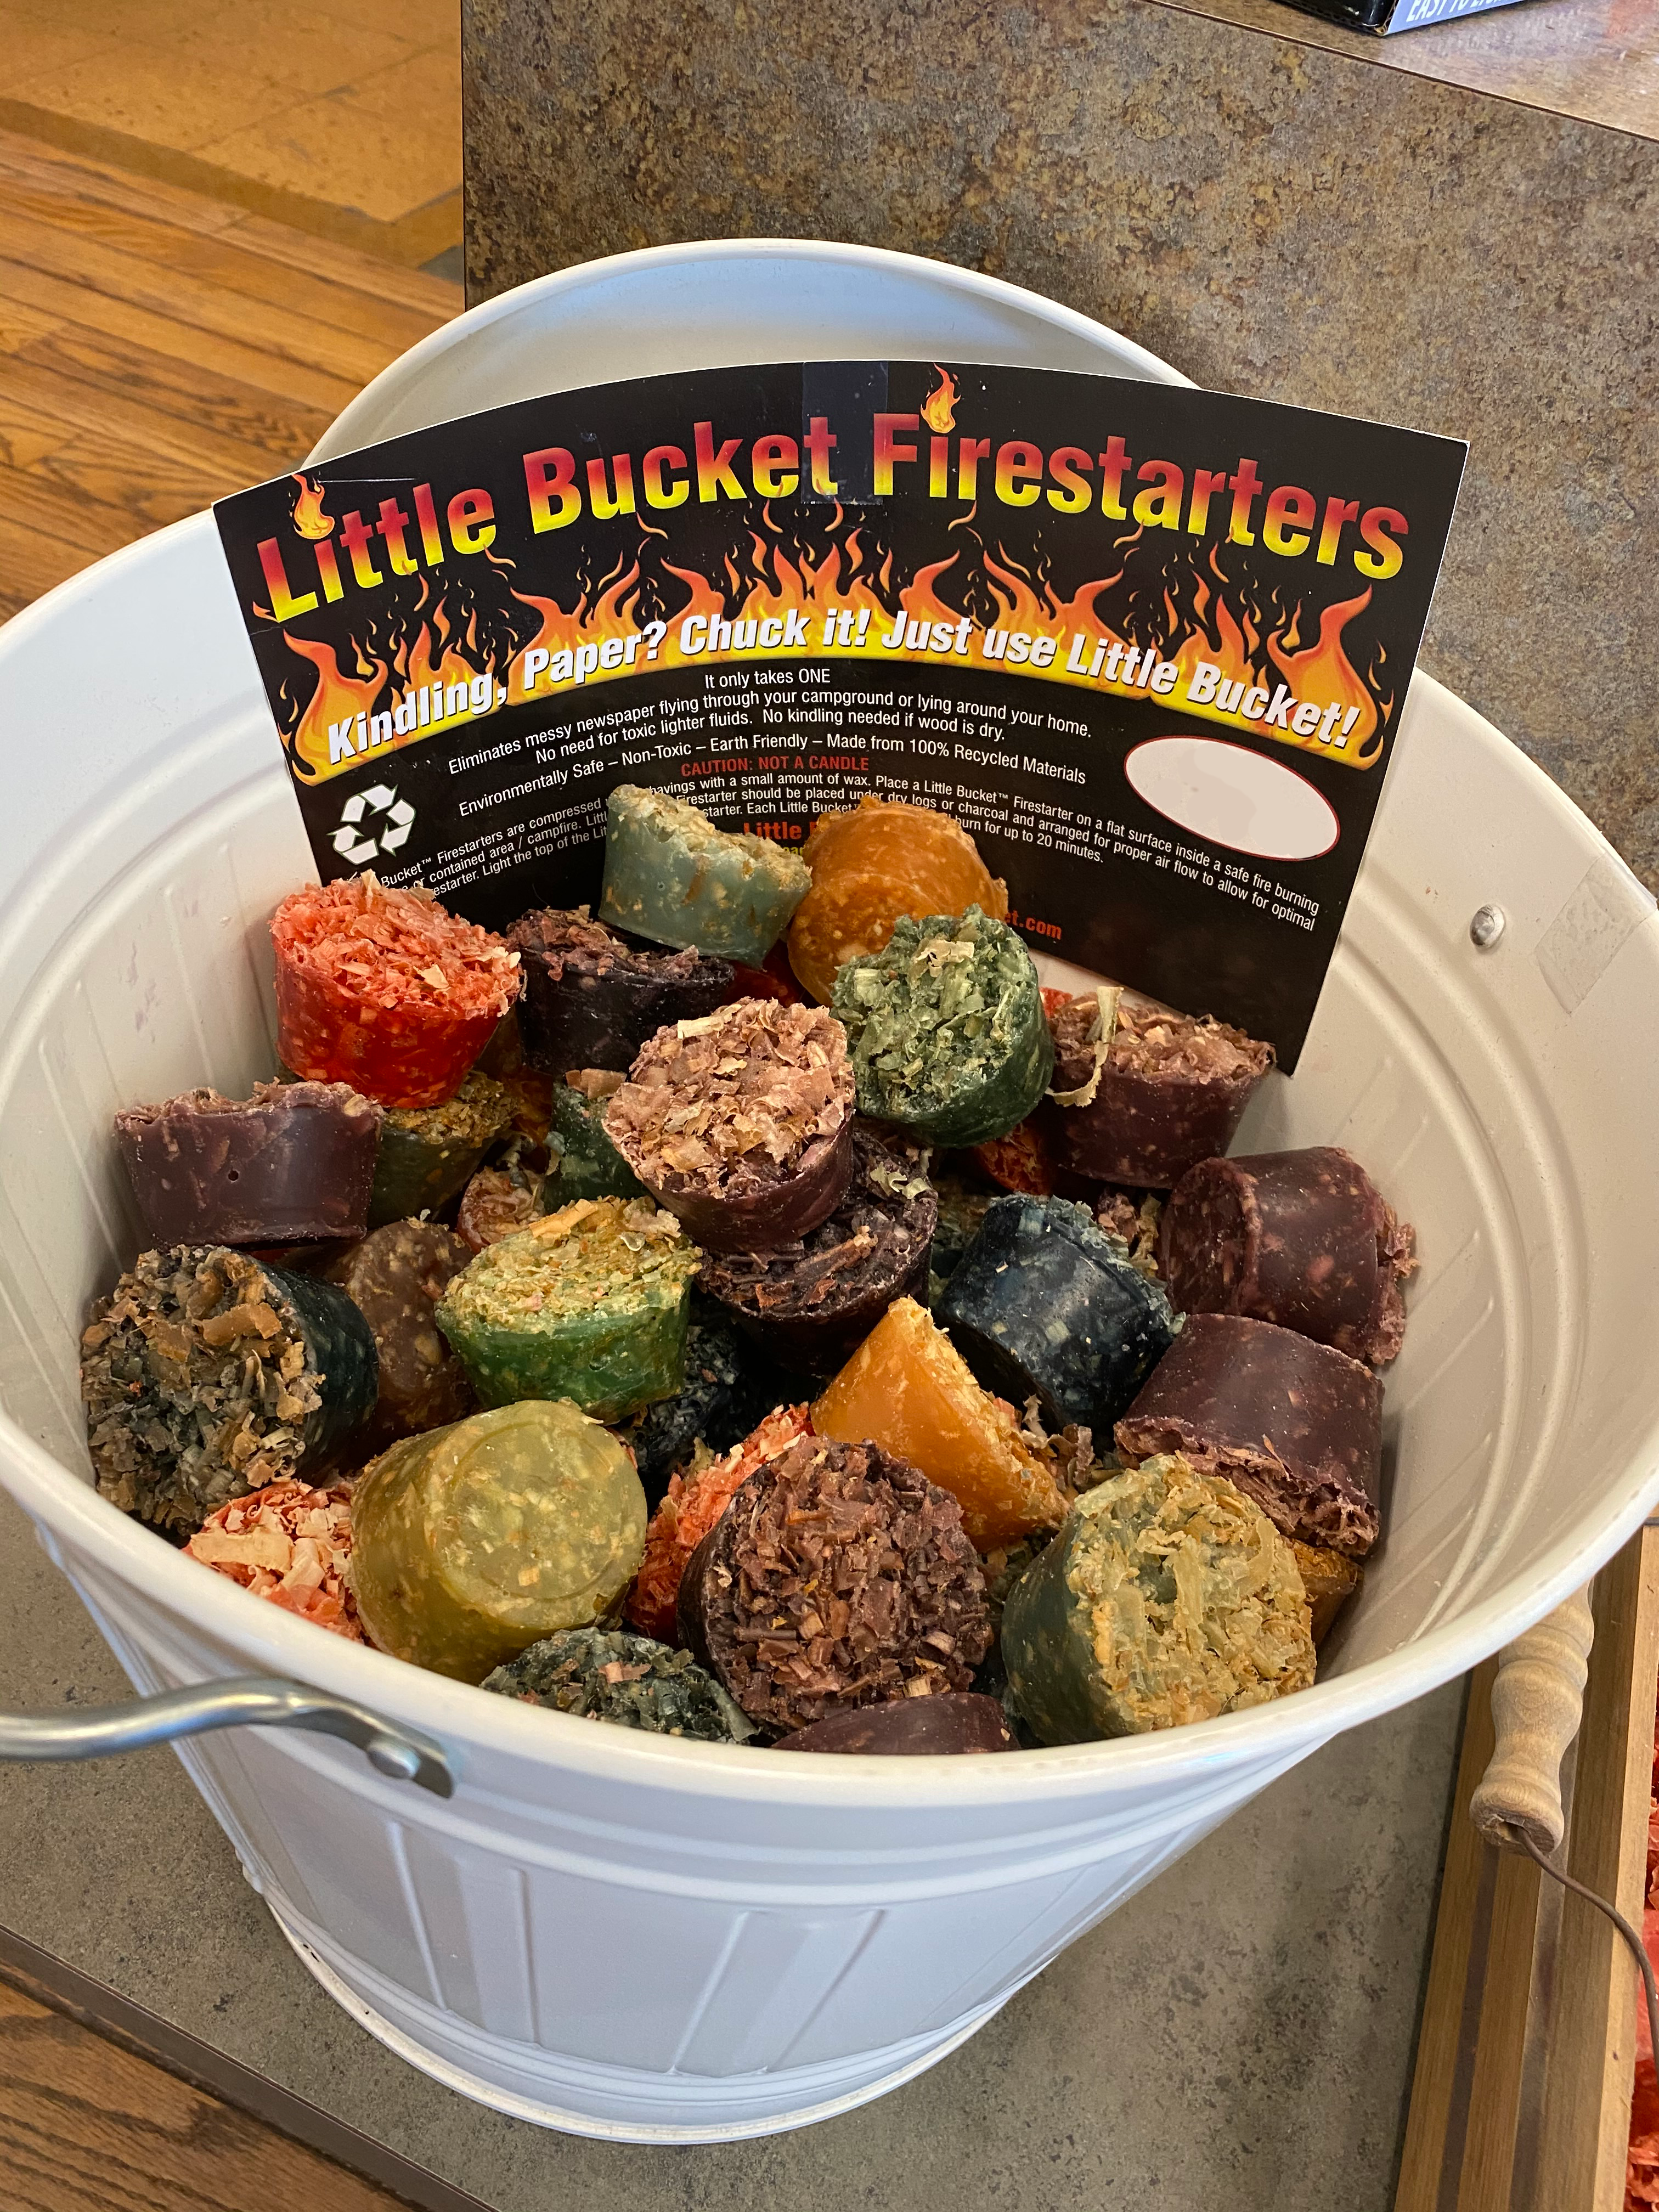 Little Bucket Firestarters